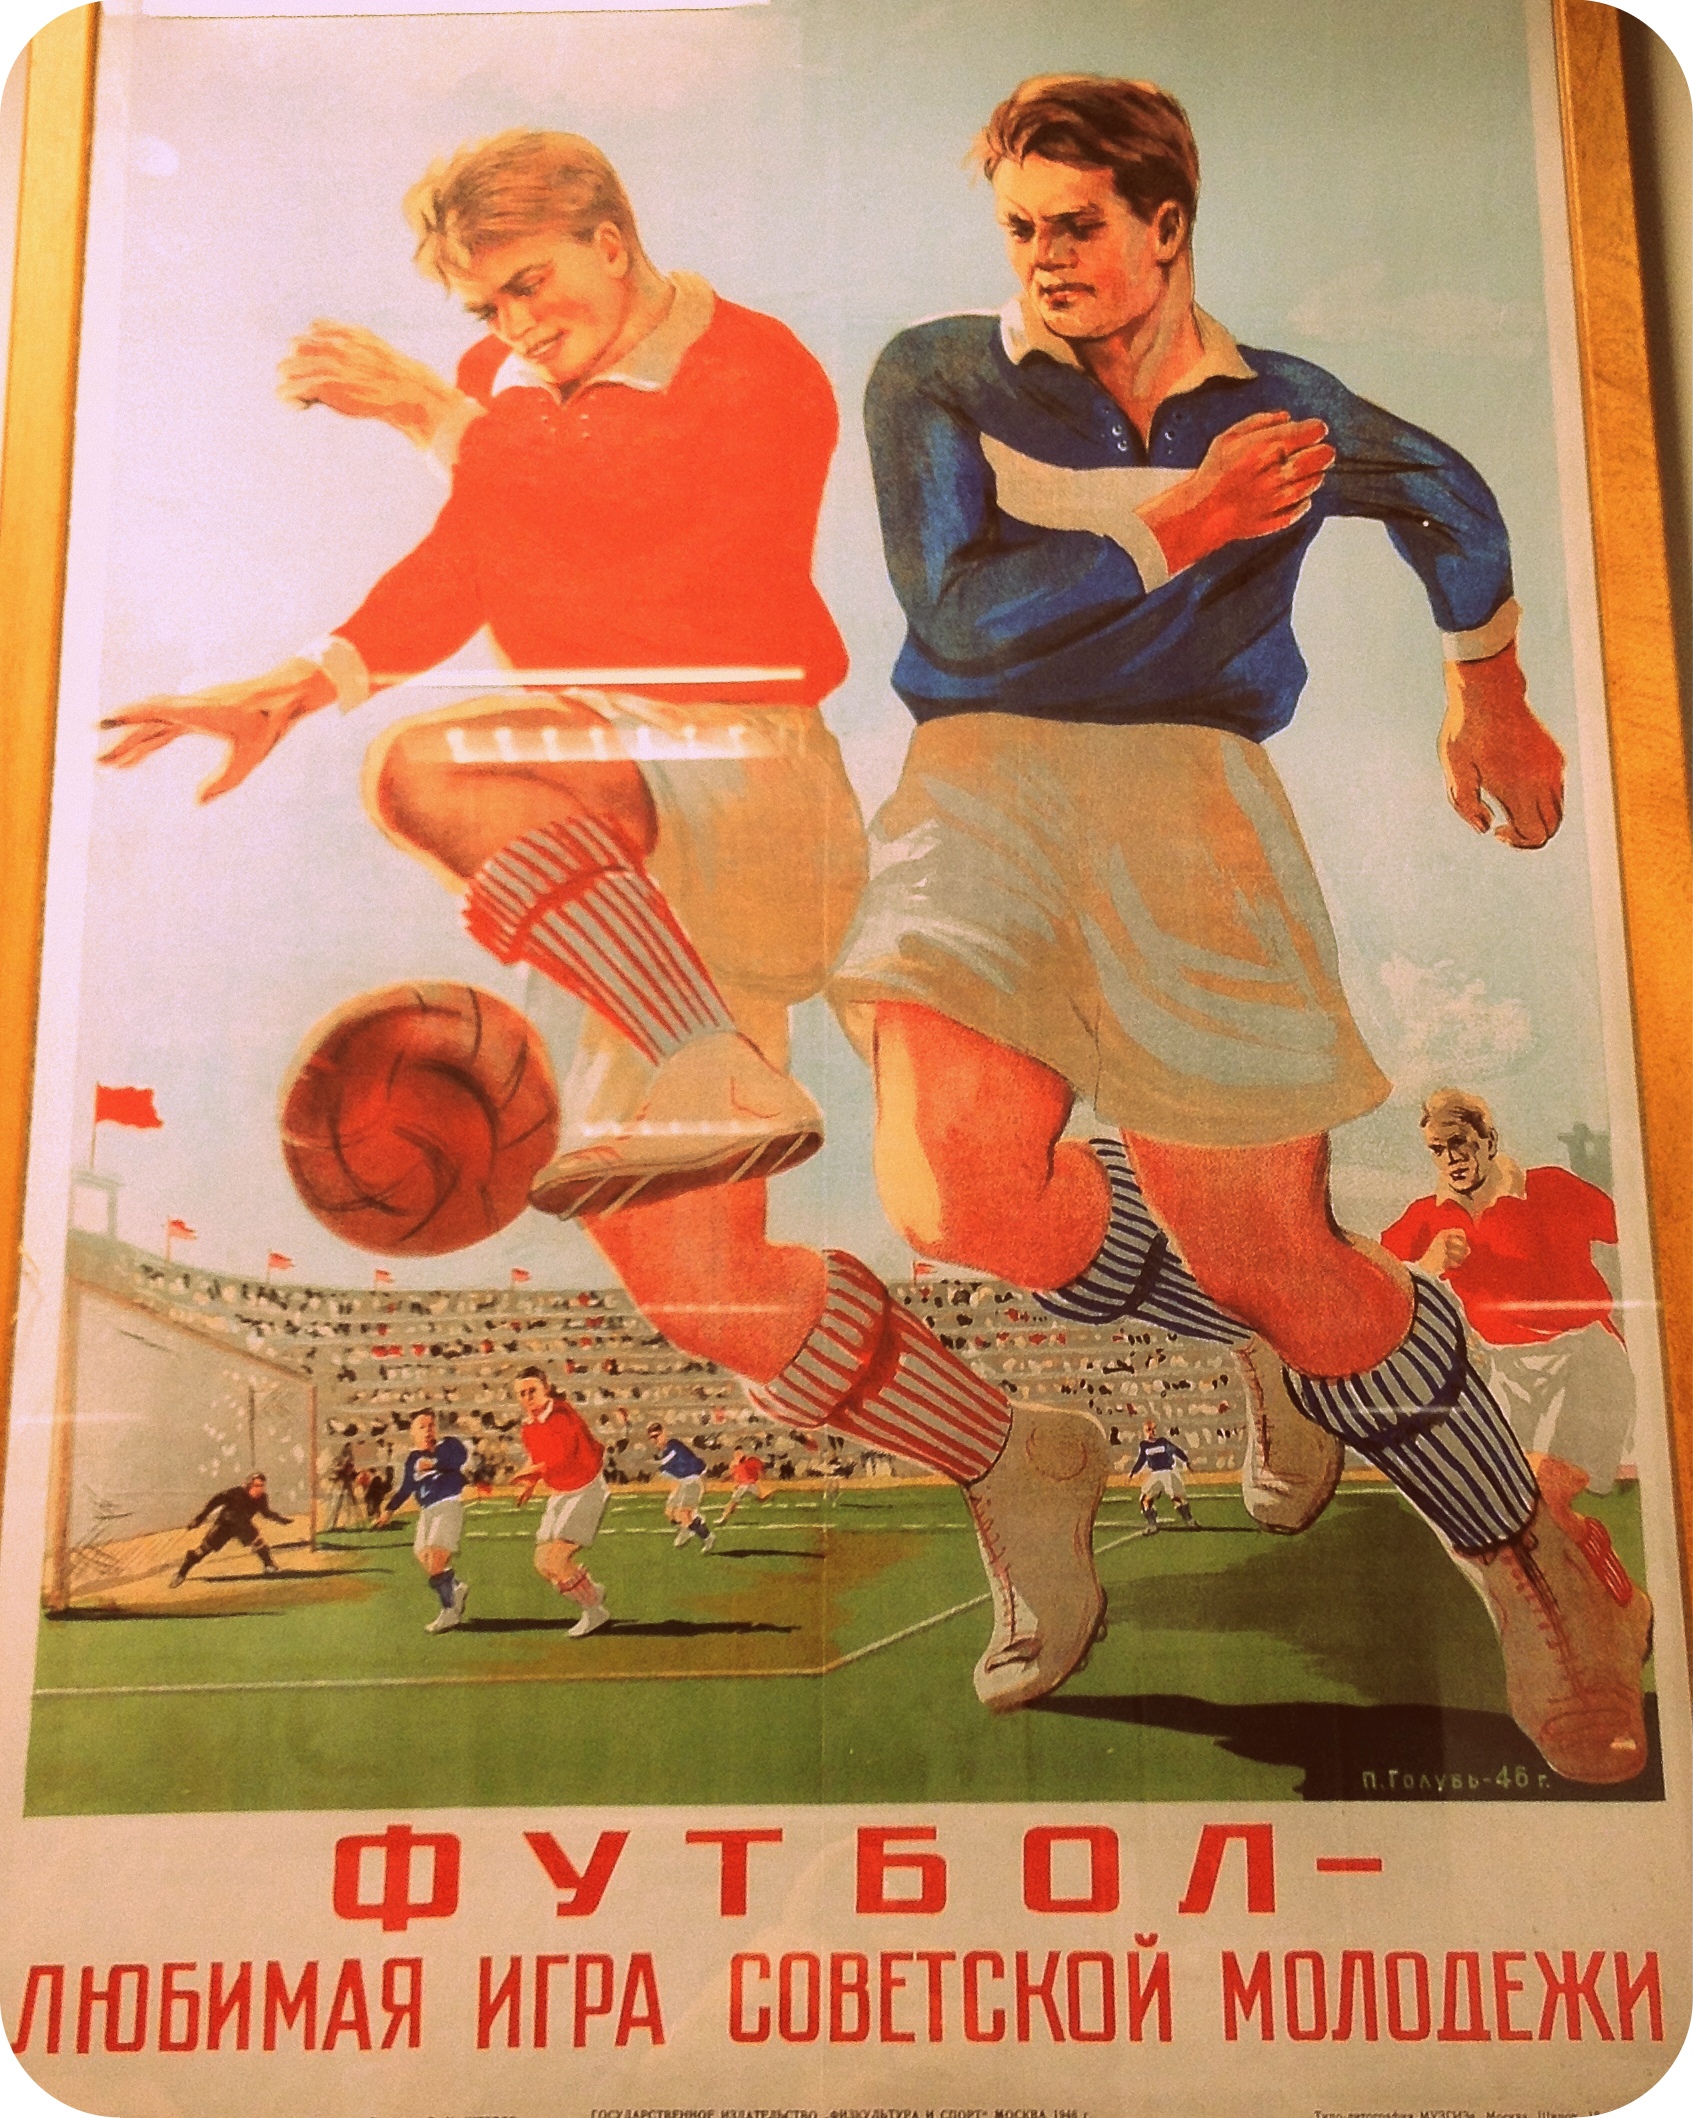 Про советский футбол. Советские плакаты про спорт. Советские спортивные постеры. Советские футбольные постеры. Советские плакаты про футбол.